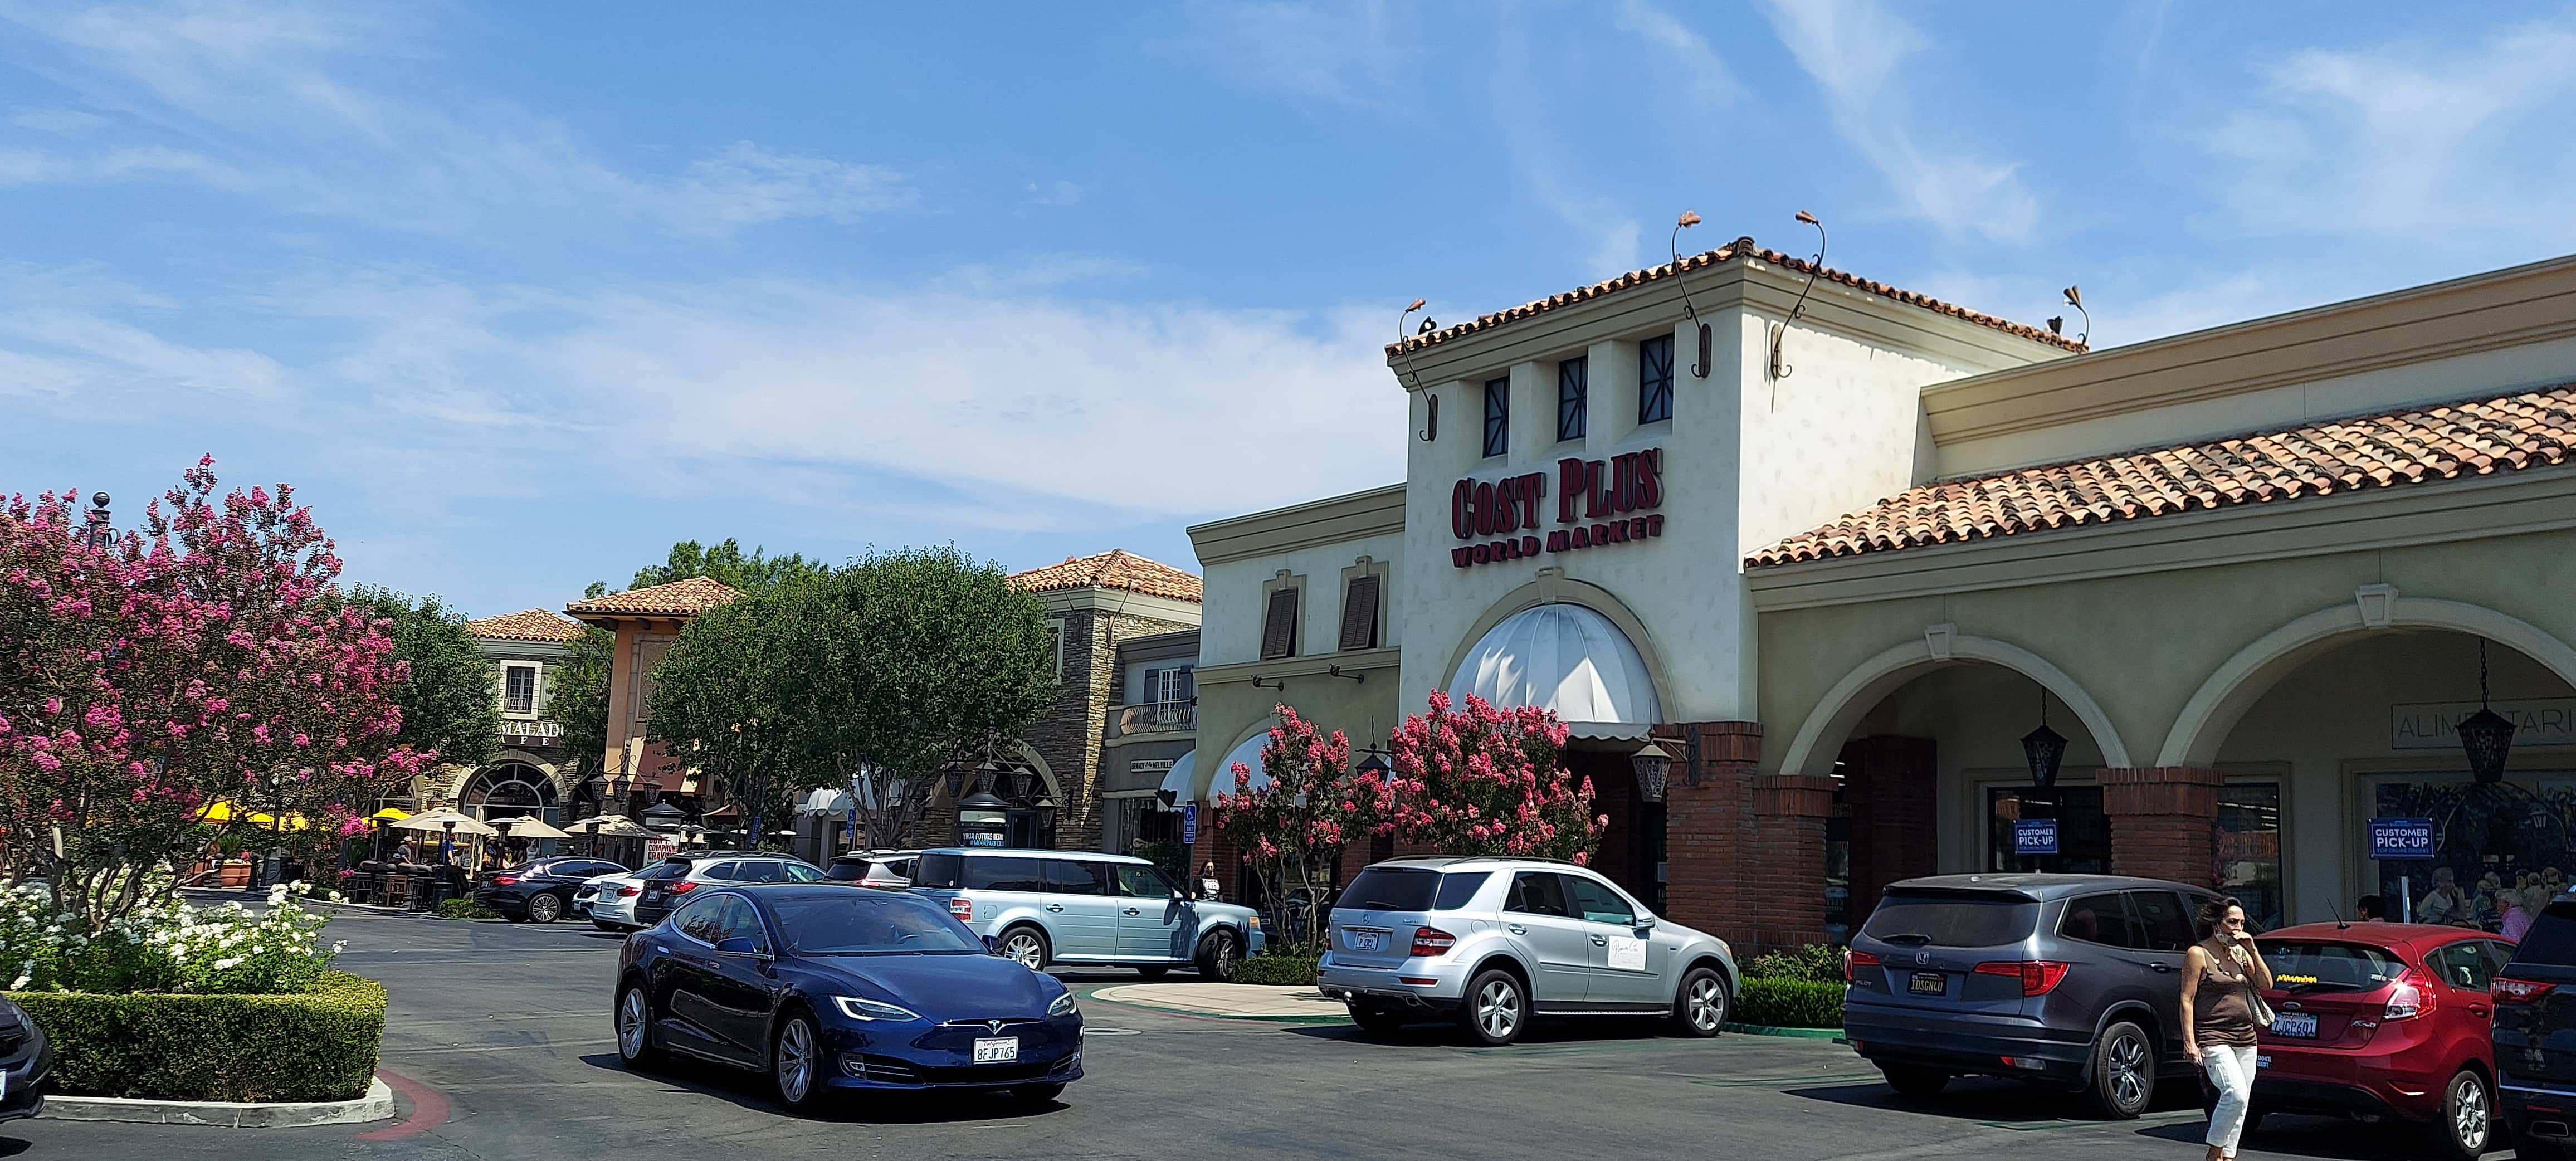 The Westlake Village Promenade Malls in Ventura County